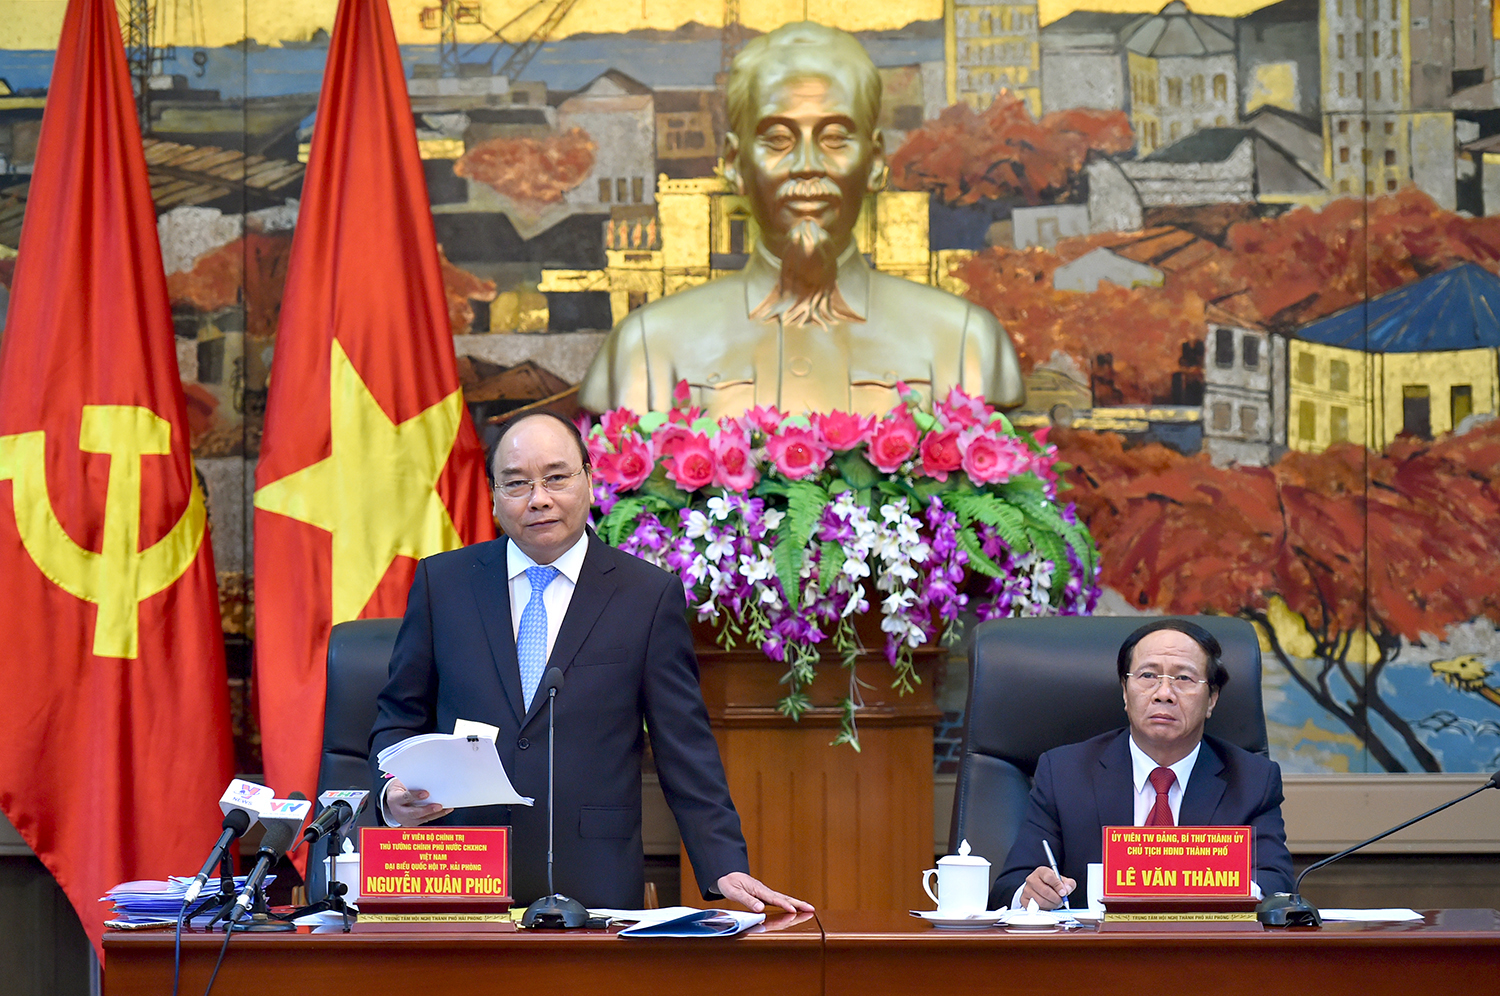 Thủ tướng Nguyễn Xuân Phúc phát biểu chỉ đạo tại buổi làm việc với Thành ủy TP. Hải Phòng về tình hình kinh tế-xã hội. Ảnh: VGP/Quang Hiếu.